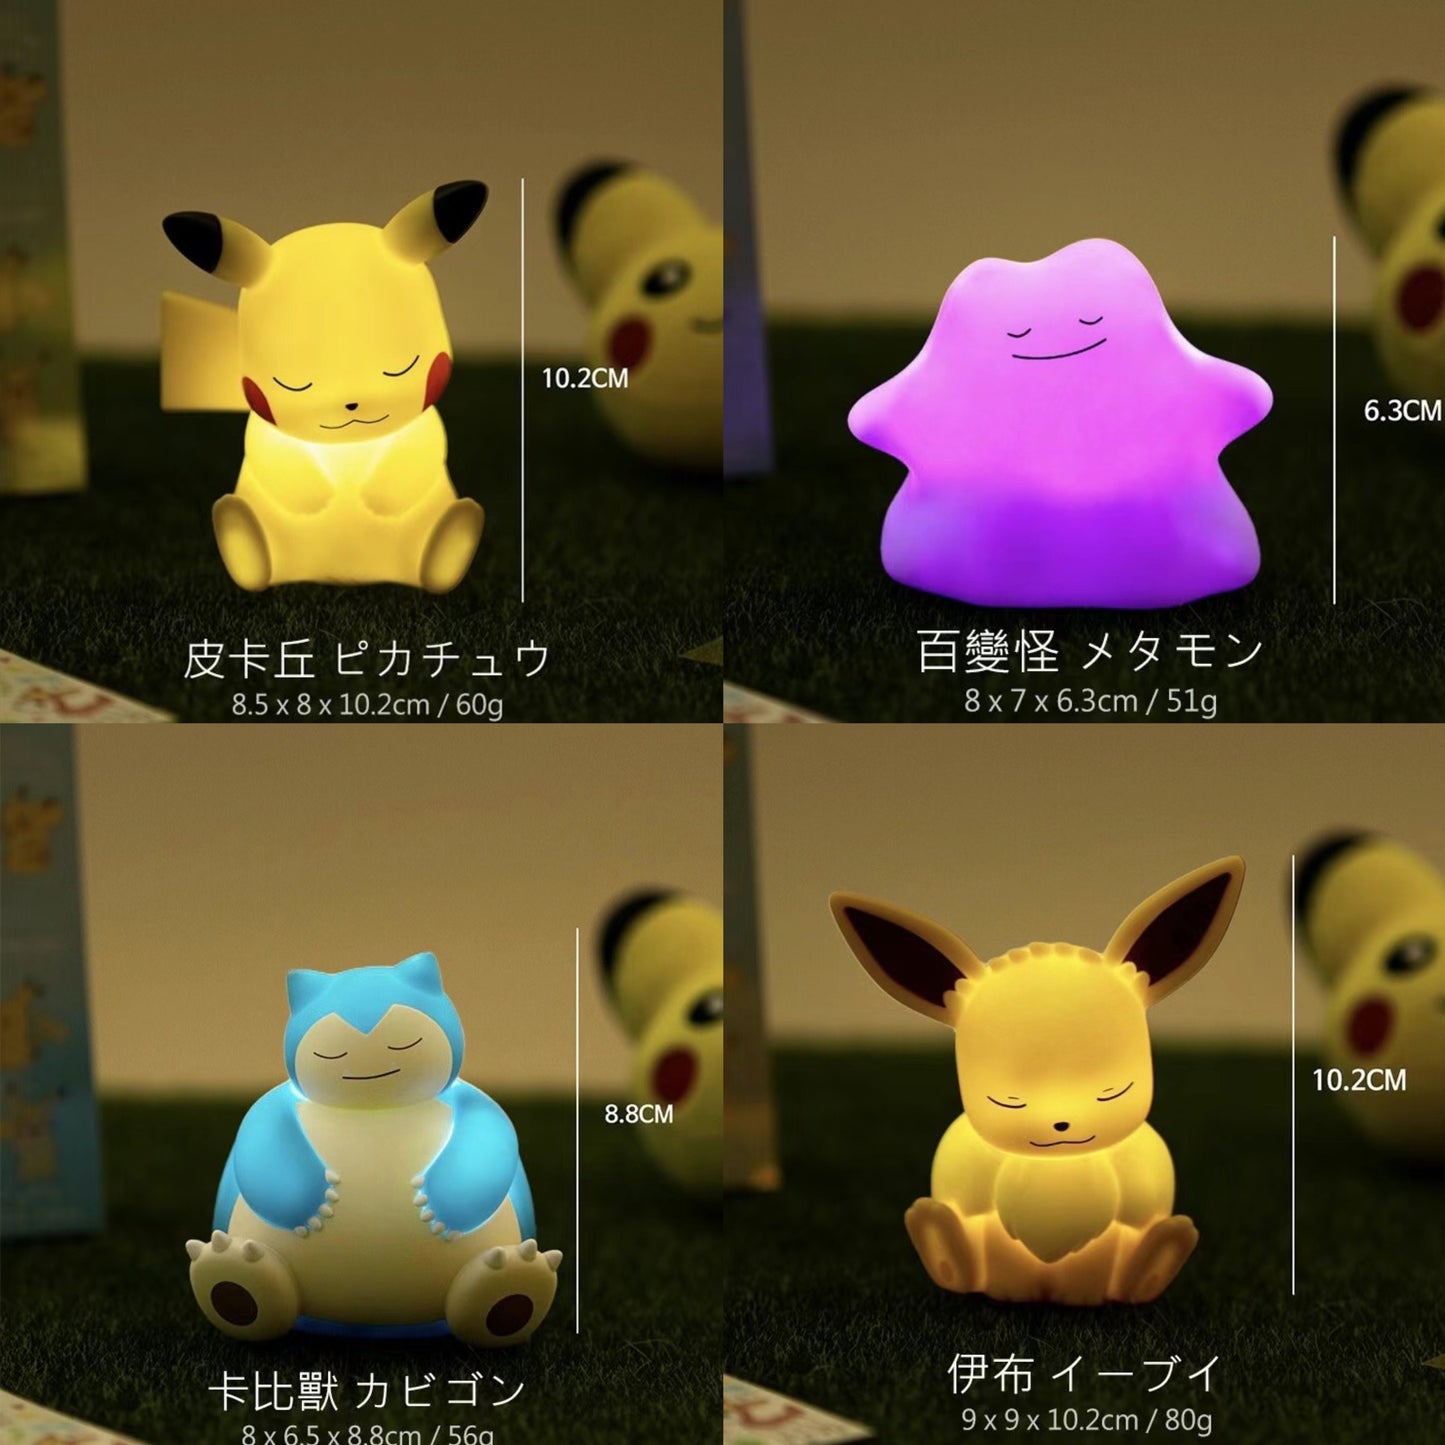 新款韓國Pokemon 寵物小精靈甜睡系列小夜燈| 一套再有優惠💡